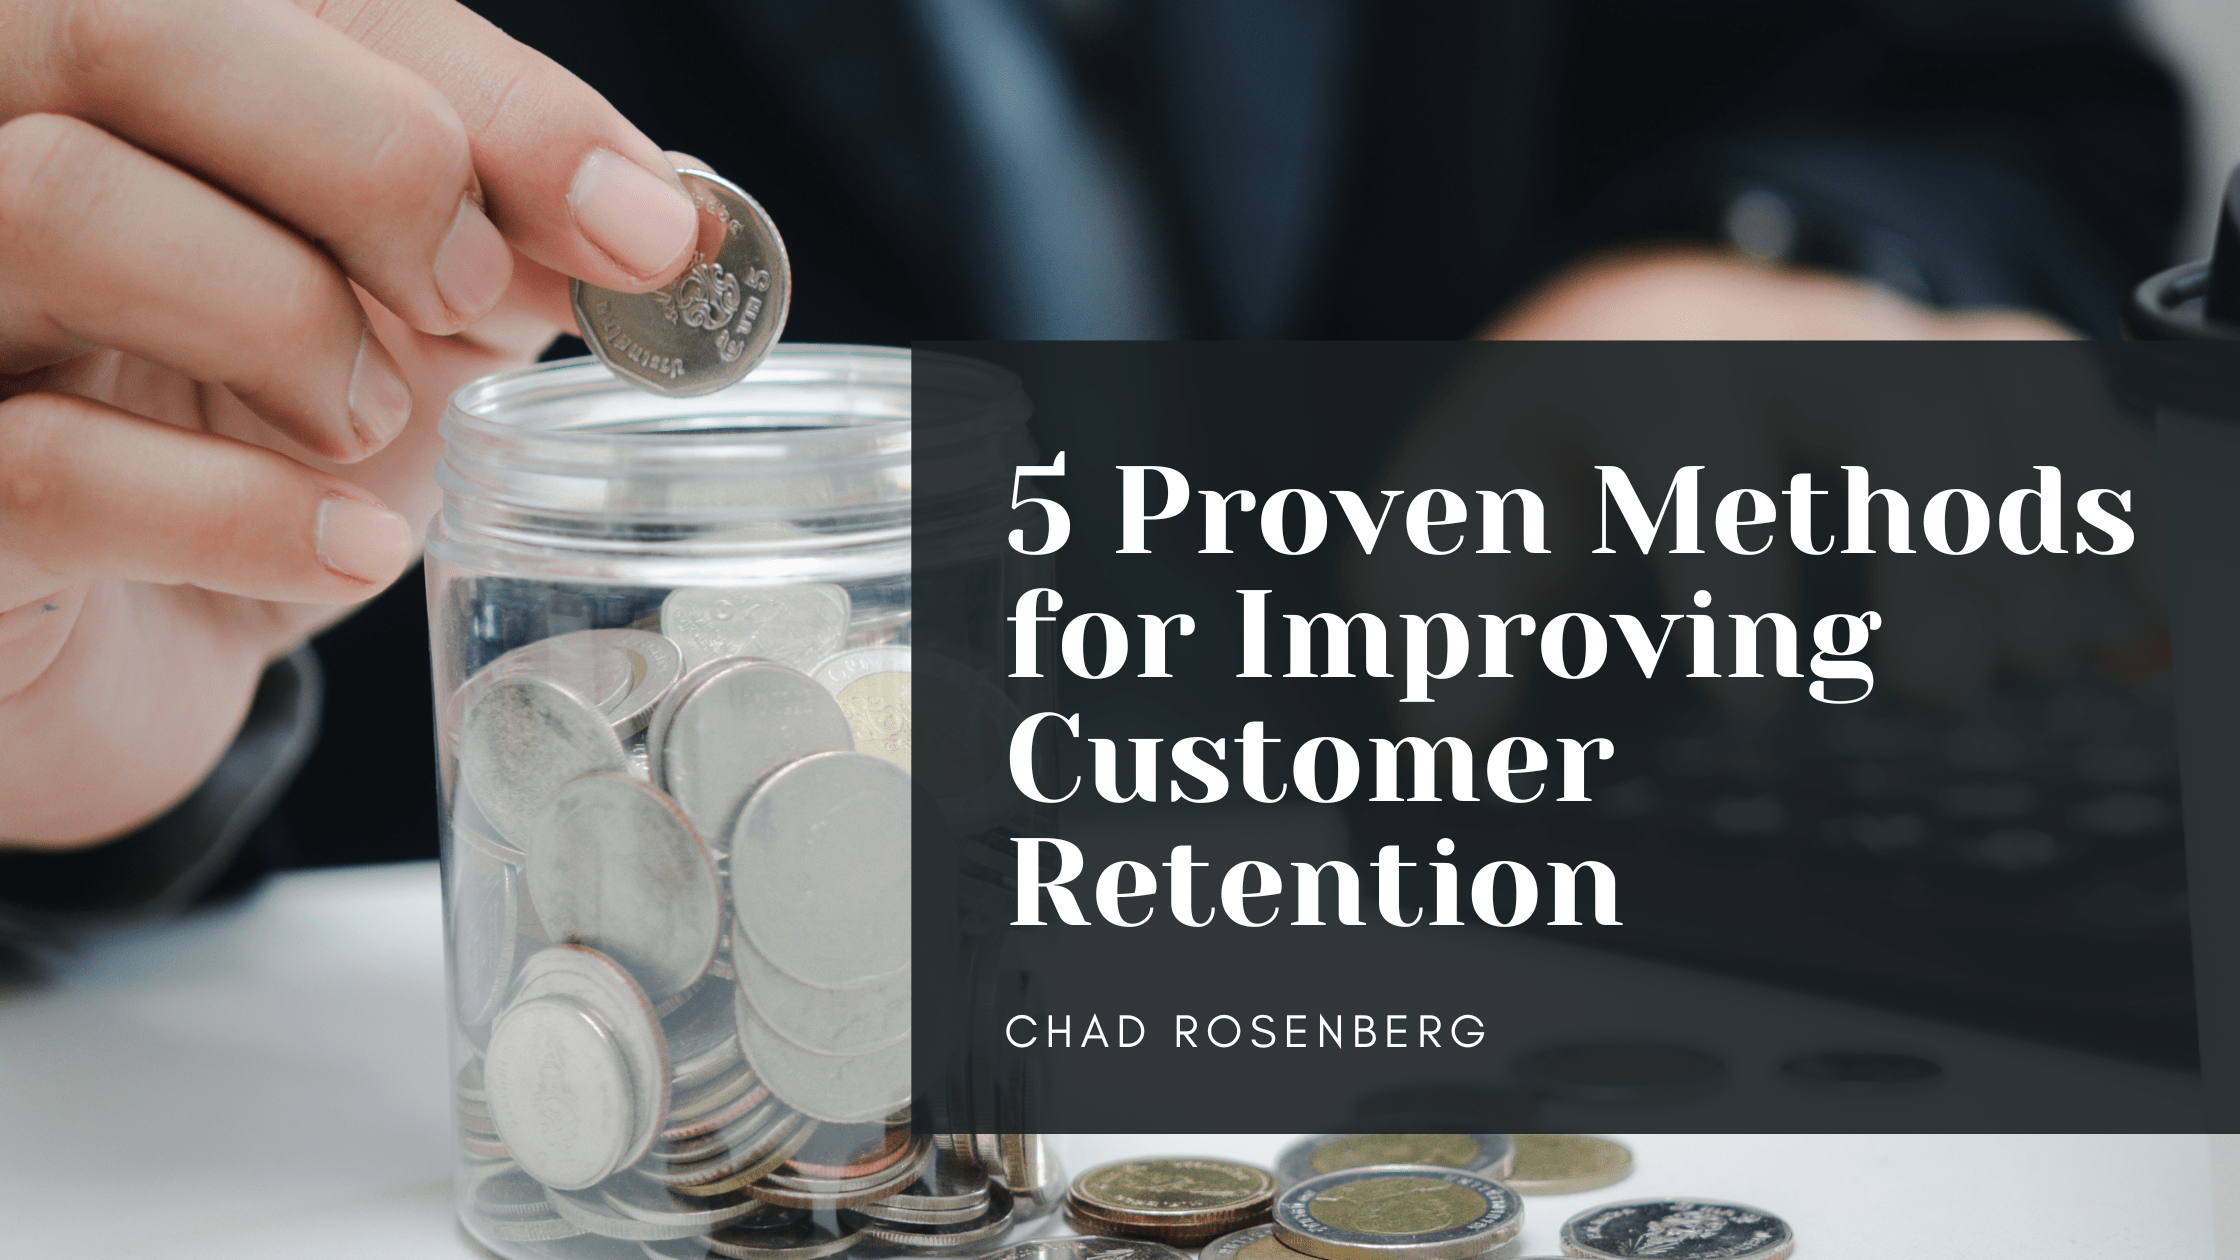 5 Proven Methods for Improving Customer Retention